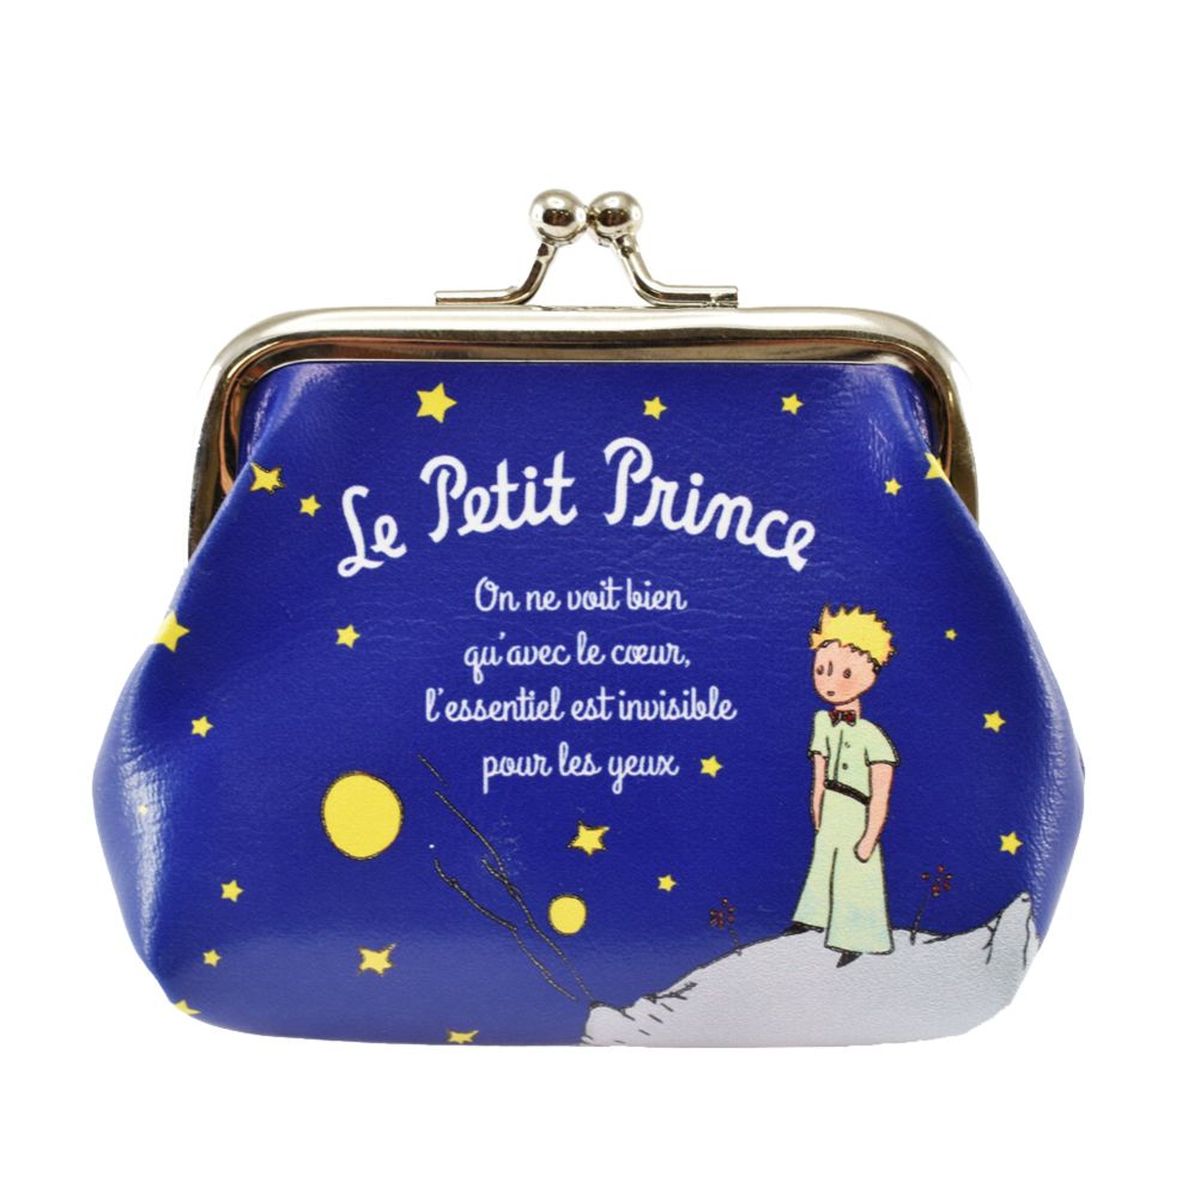 Porte monnaie Le Petit Prince de St Exupry - Nuit toile